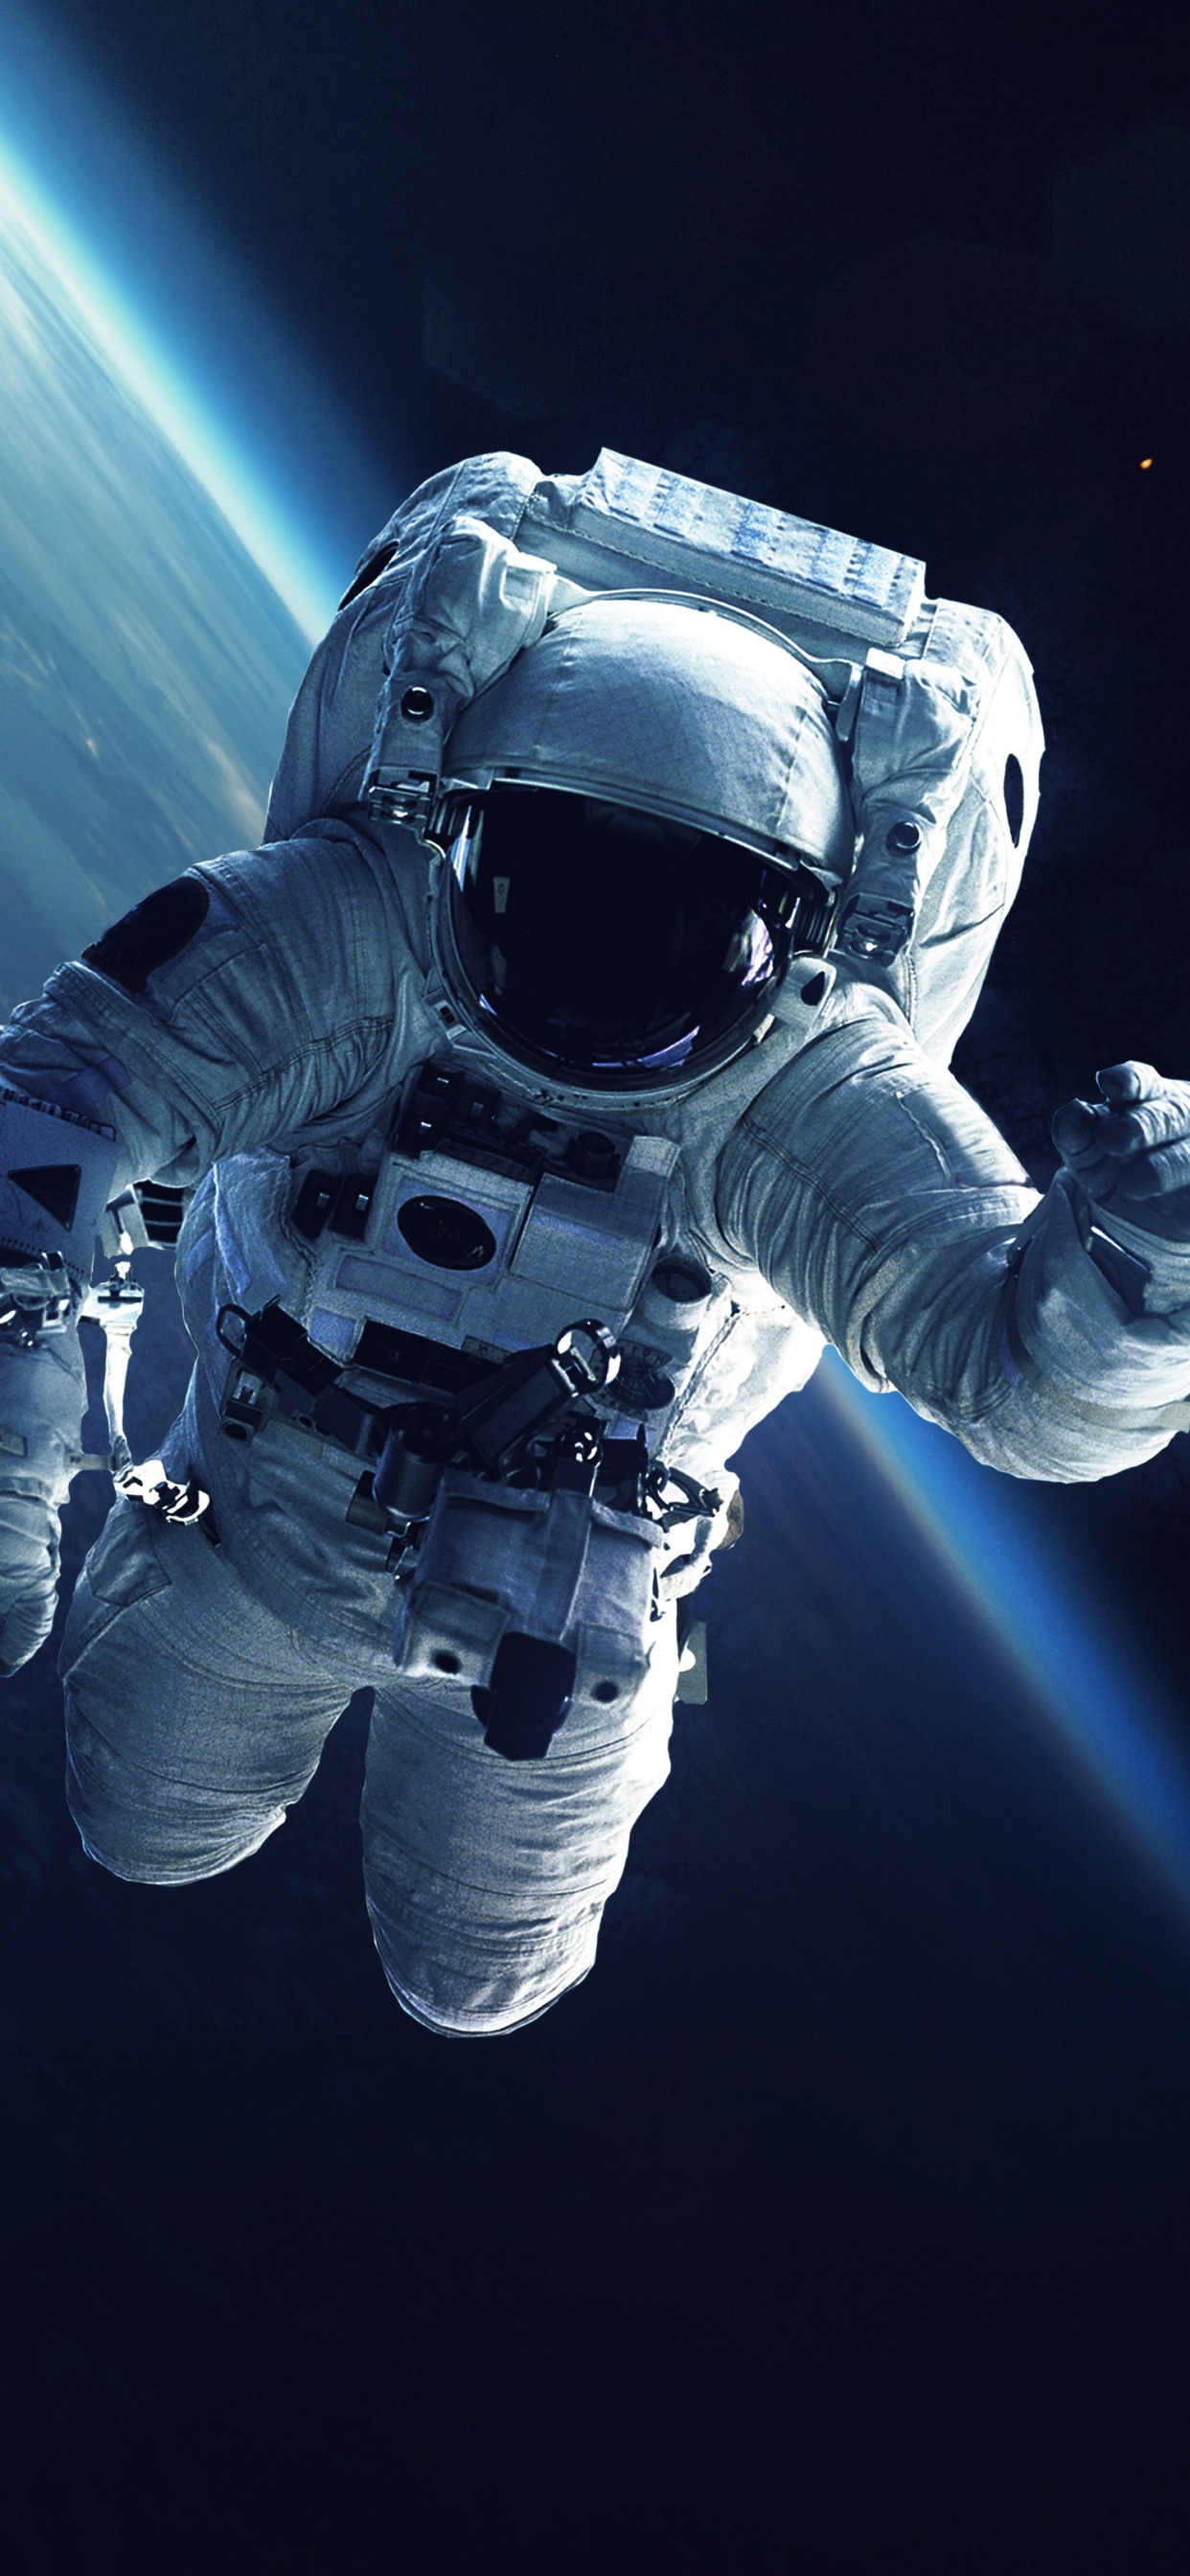 国际空间站, 宇航员, 美国宇航局, 空间探索, 外层空间 壁纸 1242x2688 允许